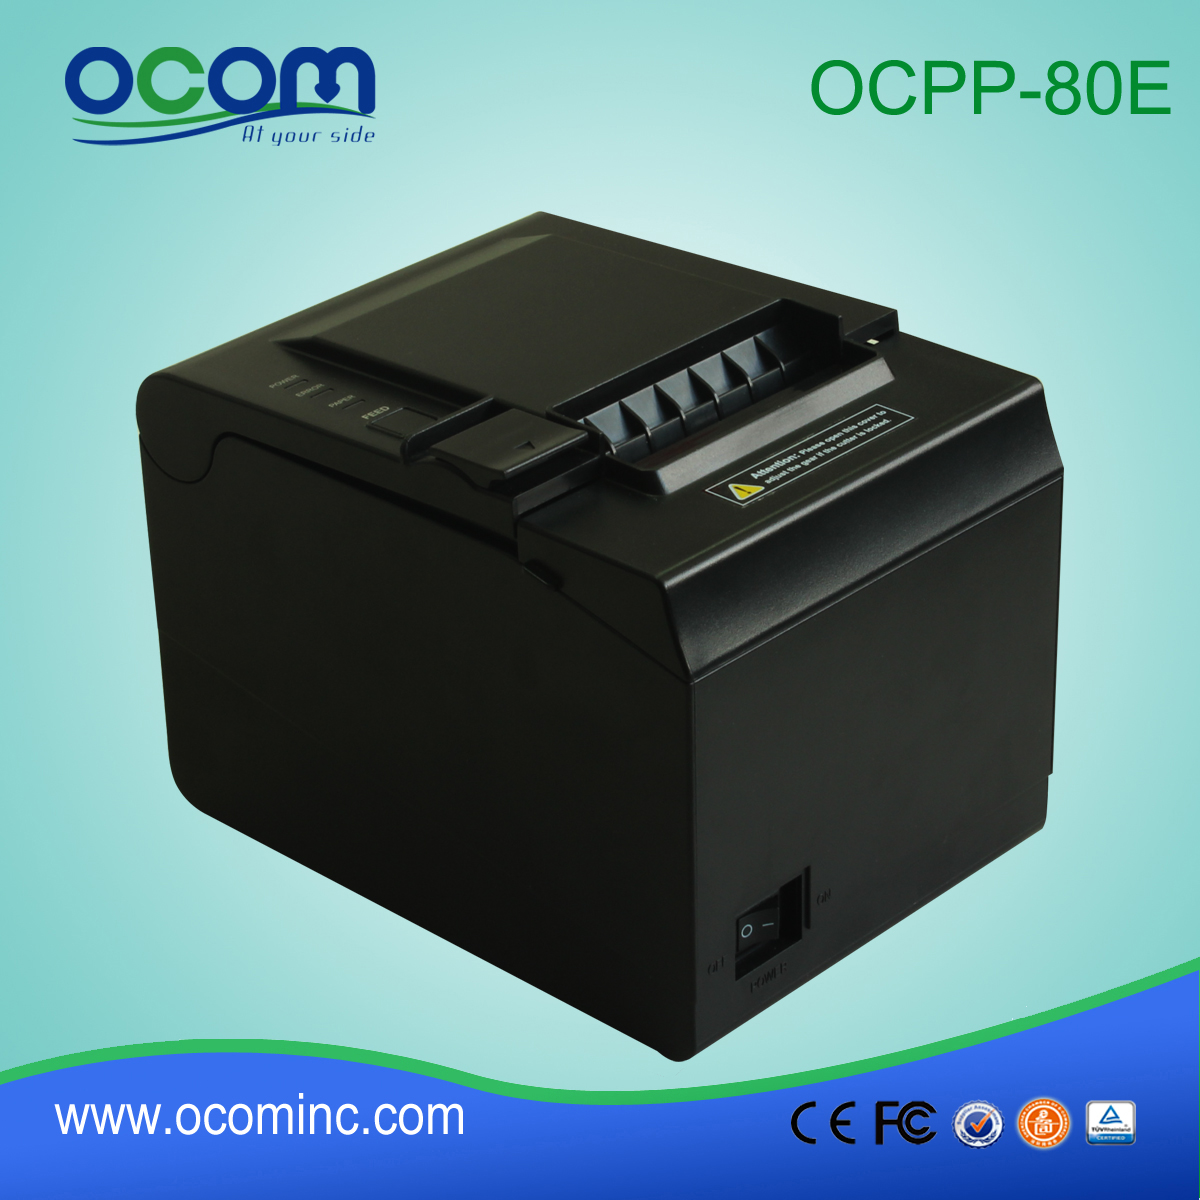 80 millimetri stampante termica della stampante POS OCPP-80E supporta il rilevamento segno nero